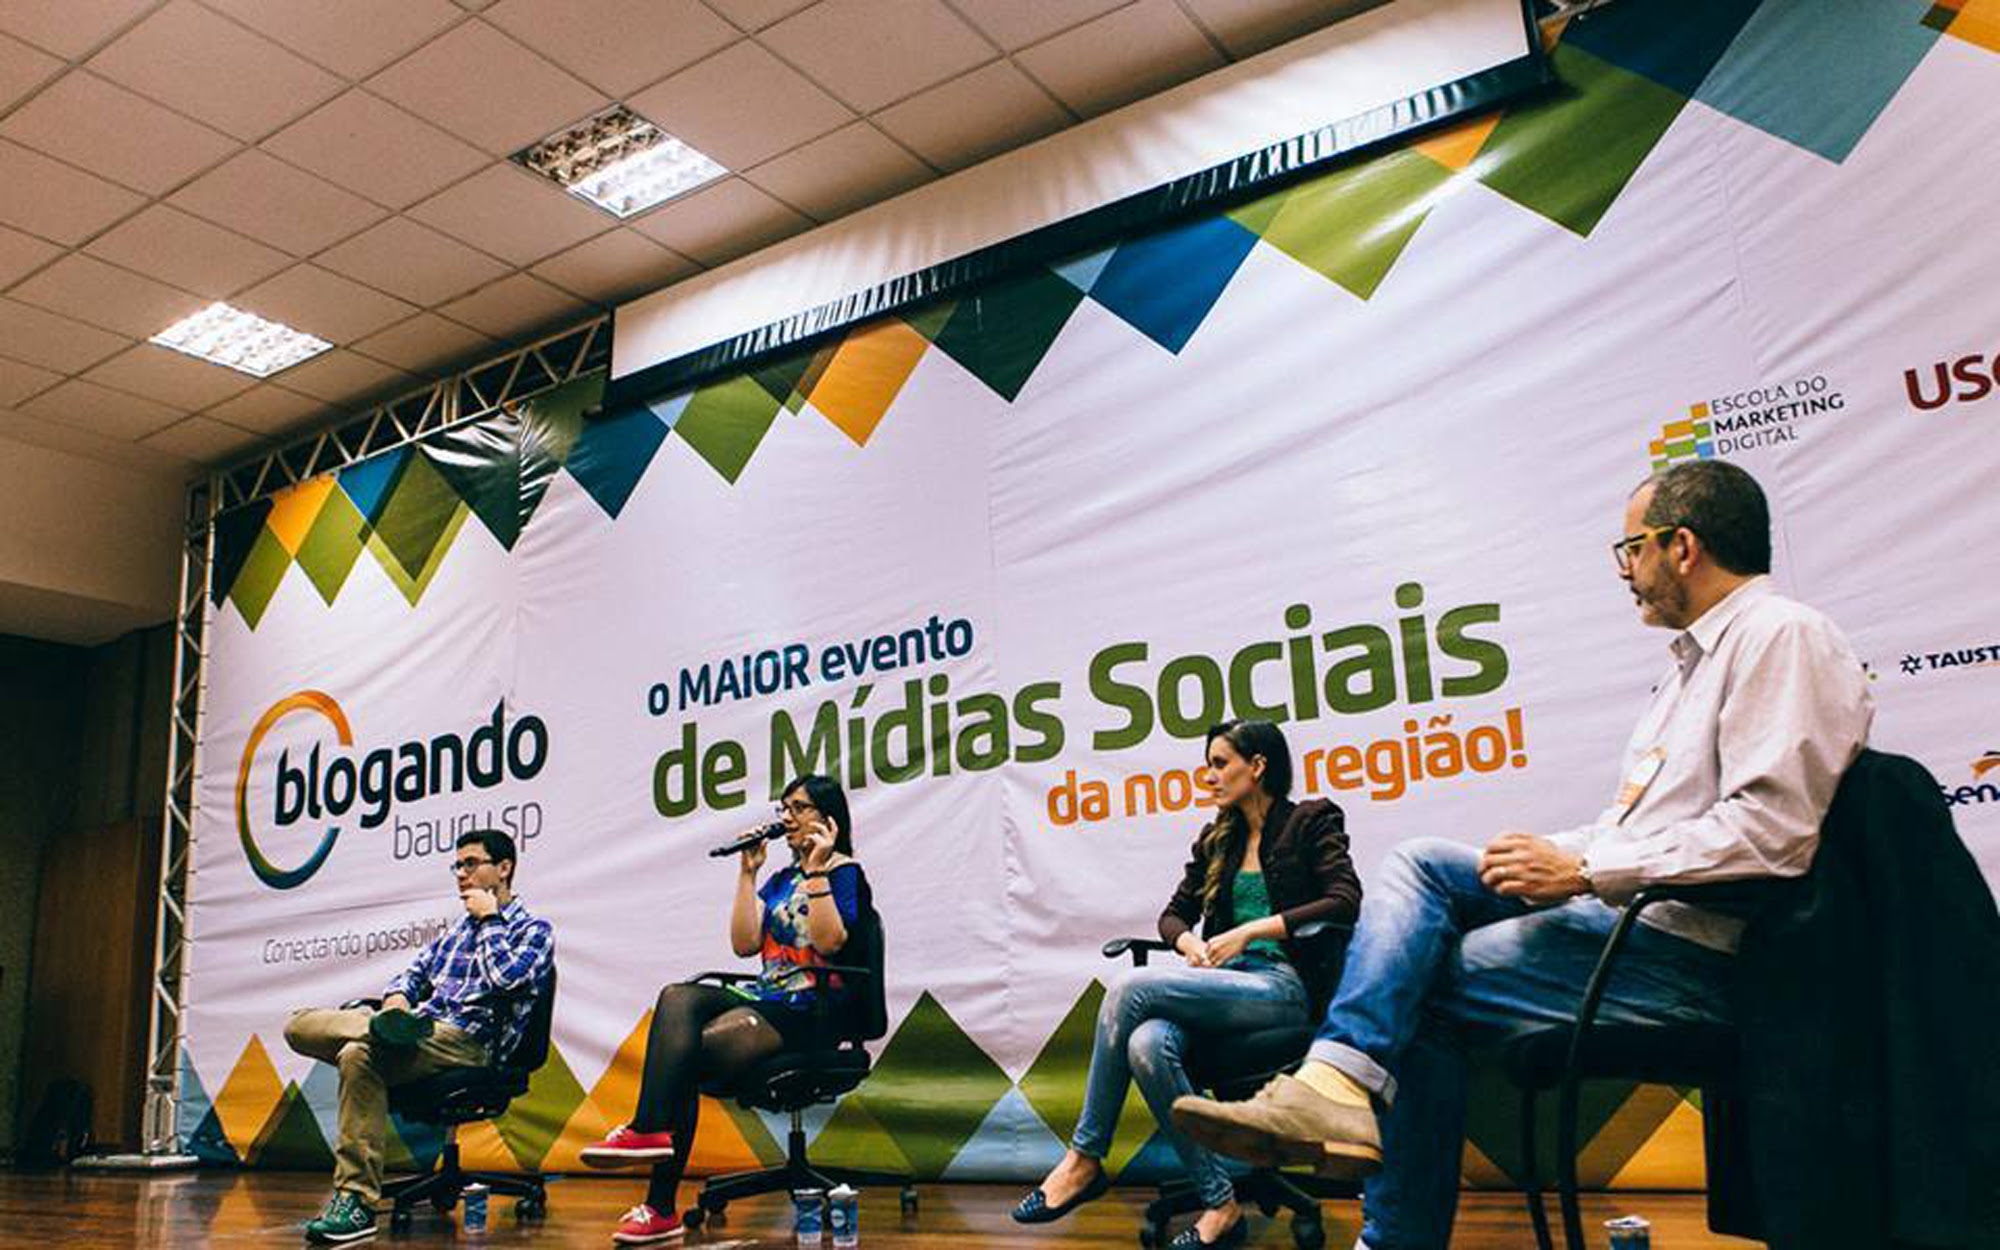 blogando - “Influenciadores Digitais” será tema do Blogando São Paulo